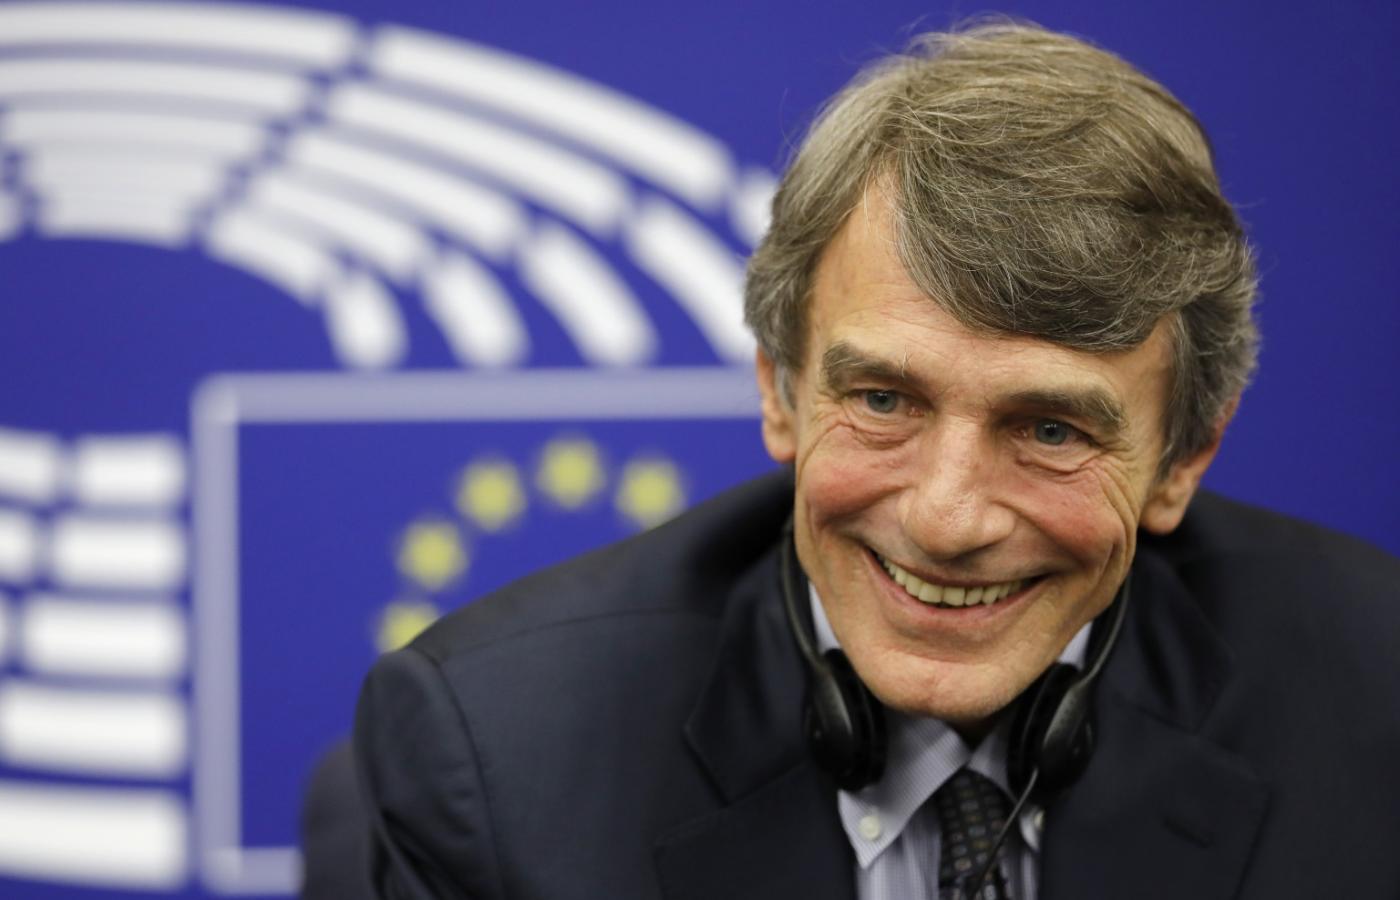 Parlament Europejski wybrał Włocha Davida Sassoliego na swego nowego przewodniczącego.